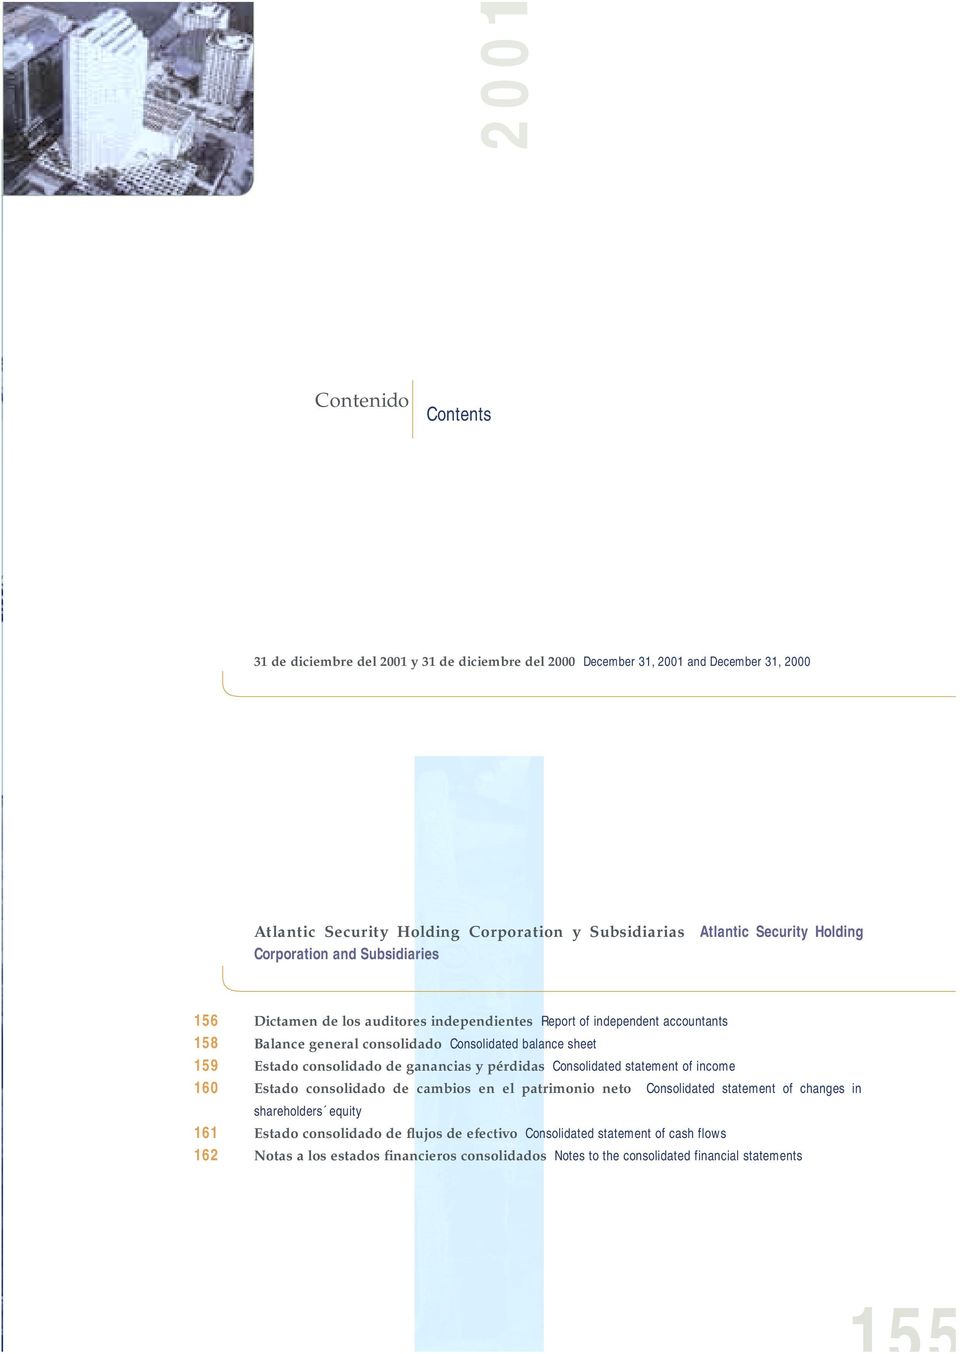 balance sheet Estado consolidado de ganancias y pérdidas Consolidated statement of income Estado consolidado de cambios en el patrimonio neto Consolidated statement of changes in